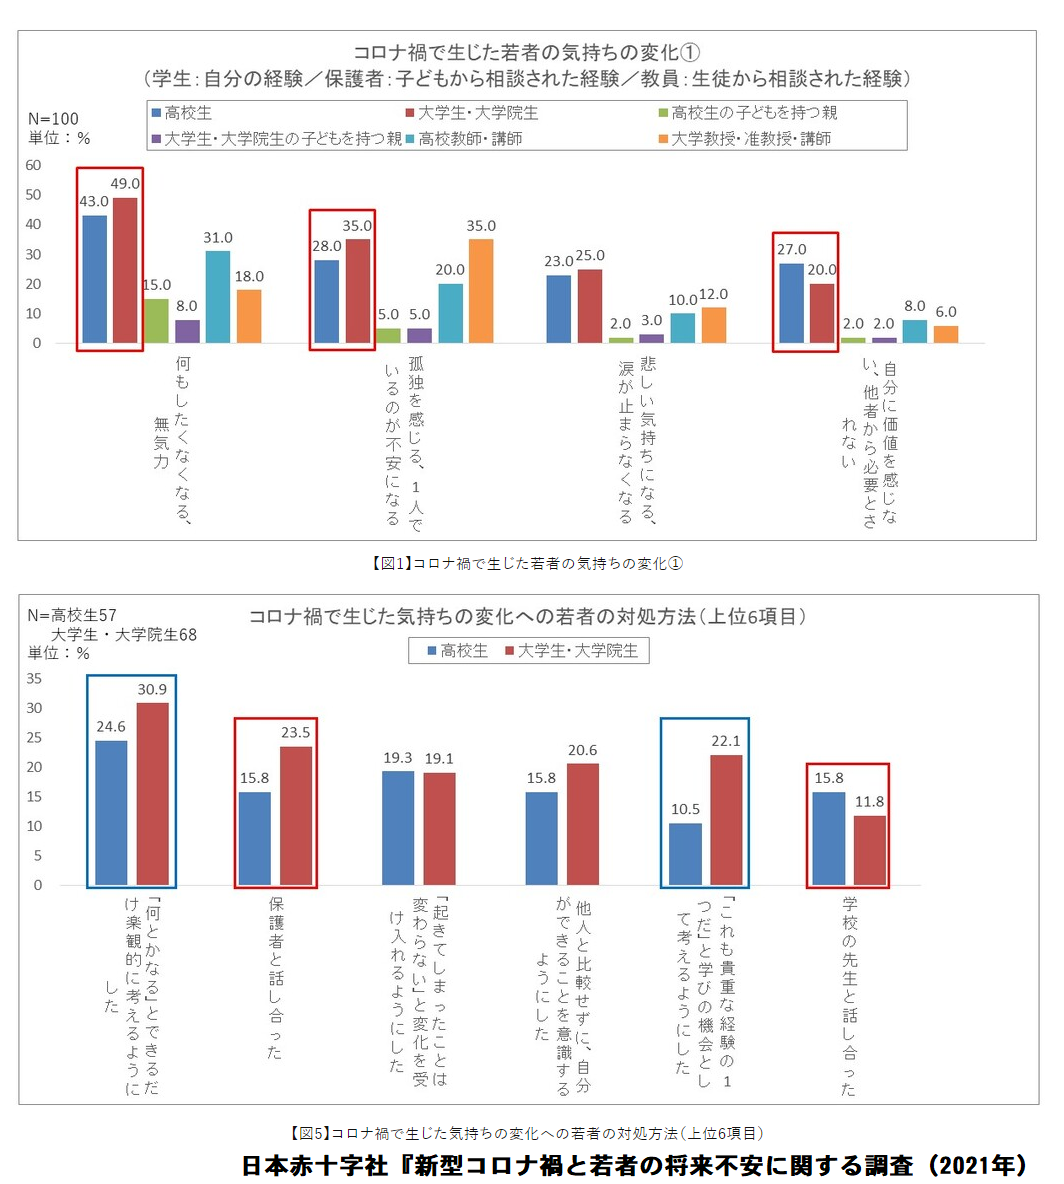 https://www.meirin-net.co.jp/classroom/gokiso_k/%E3%82%B3%E3%83%AD%E3%83%8A%E8%8B%A5%E8%80%85%E5%A4%89%E5%8C%96.png